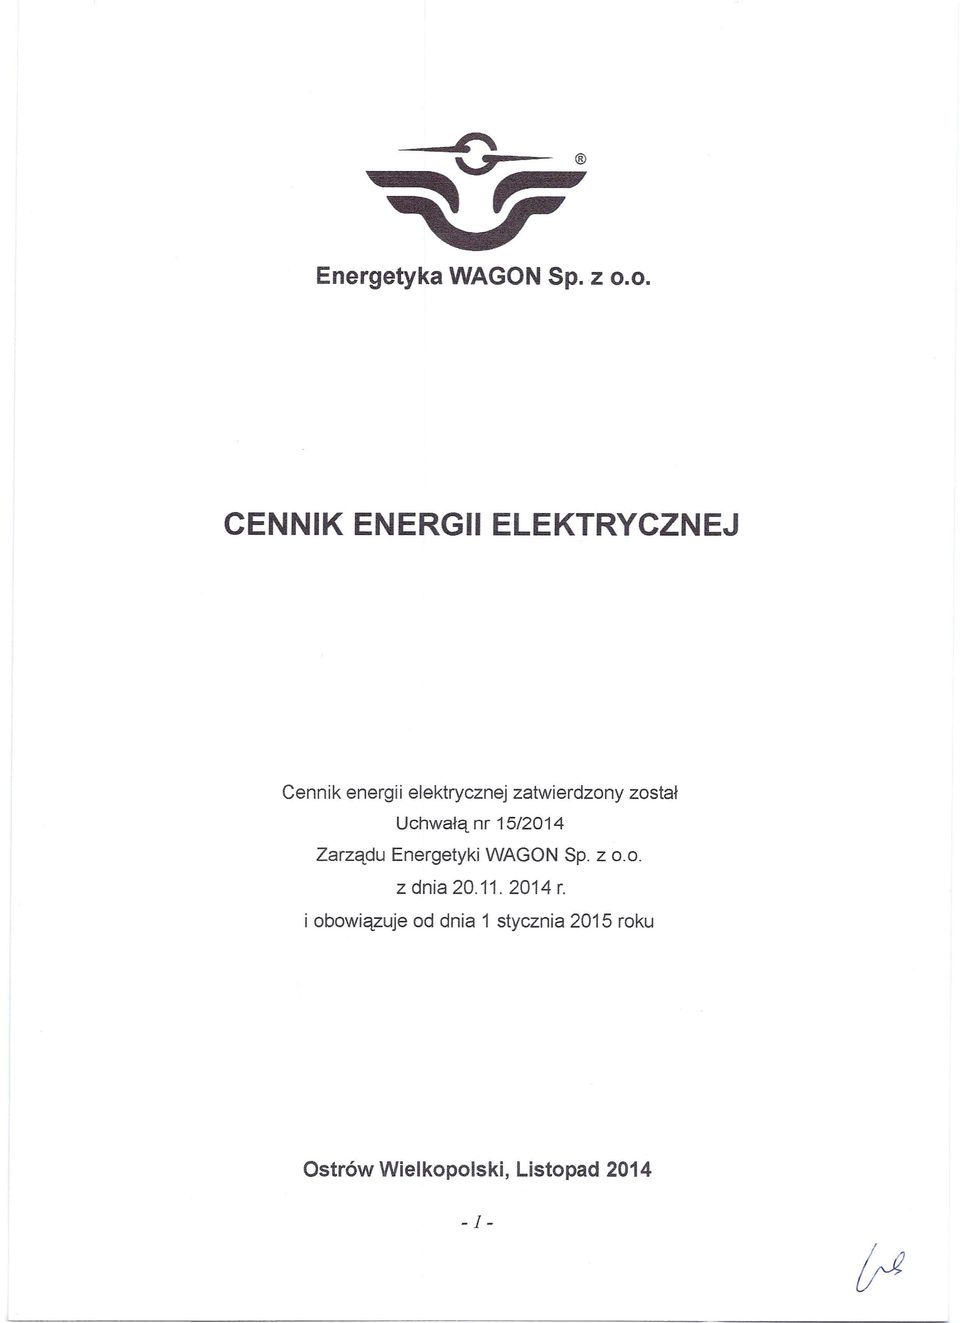 zatwierdzony został Uchwałą nr 15/2014 Zarządu Energetyki WAGON